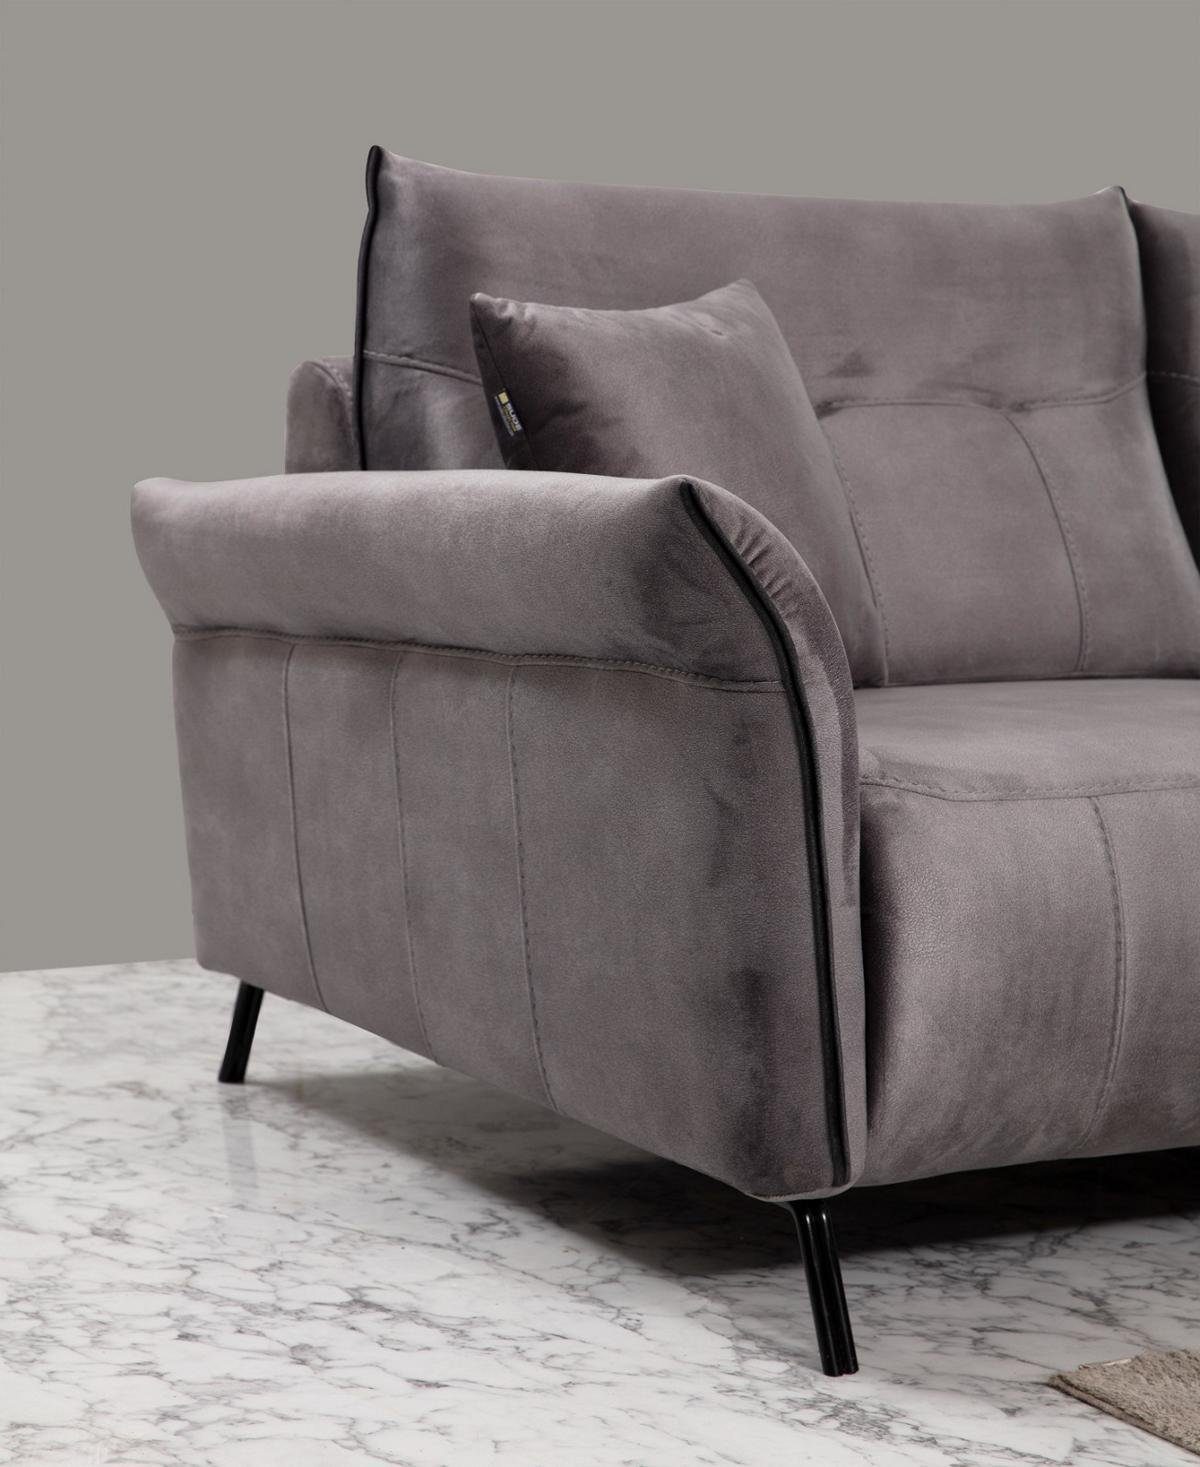 JVmoebel 3-Sitzer Set Wohnzimmer 2x Europa Couch Teile, Modern Sofa Dreisitzer Möbel, 2 in Made